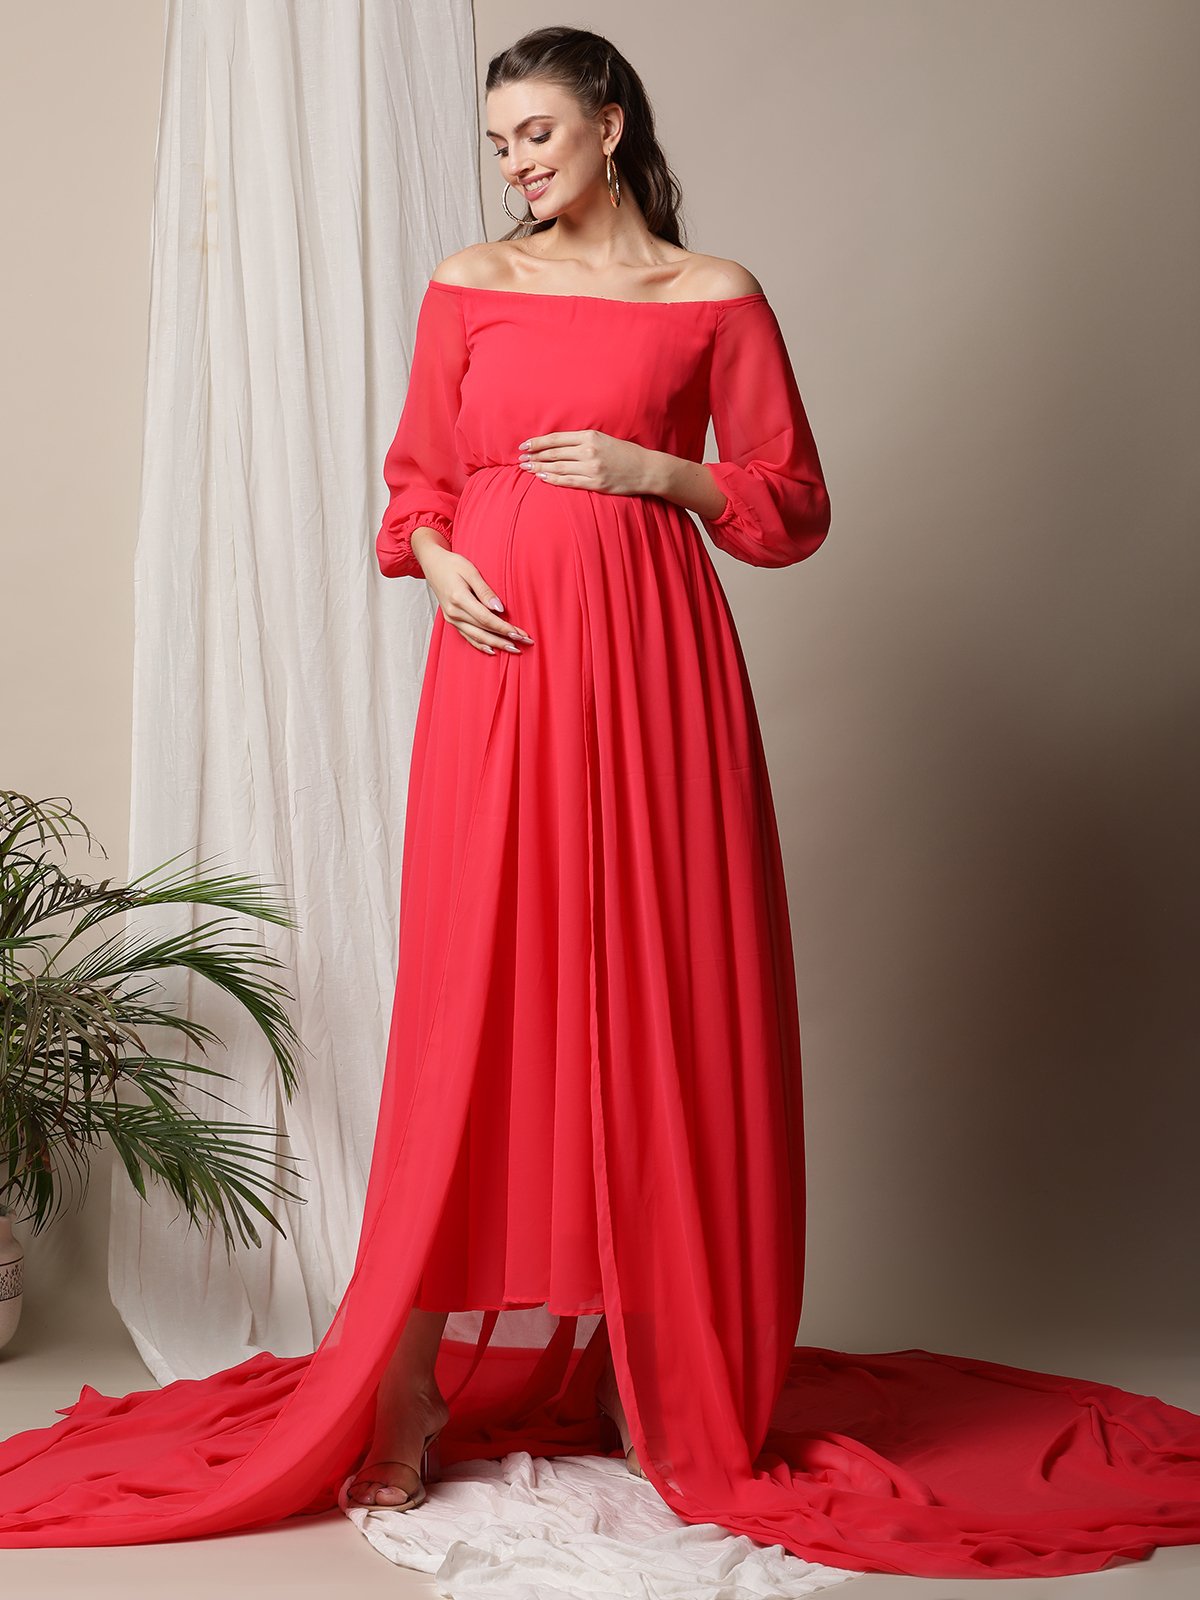 Maternity Photoshoot Dresses | Dress Hire Australia – Luxe Bumps AU